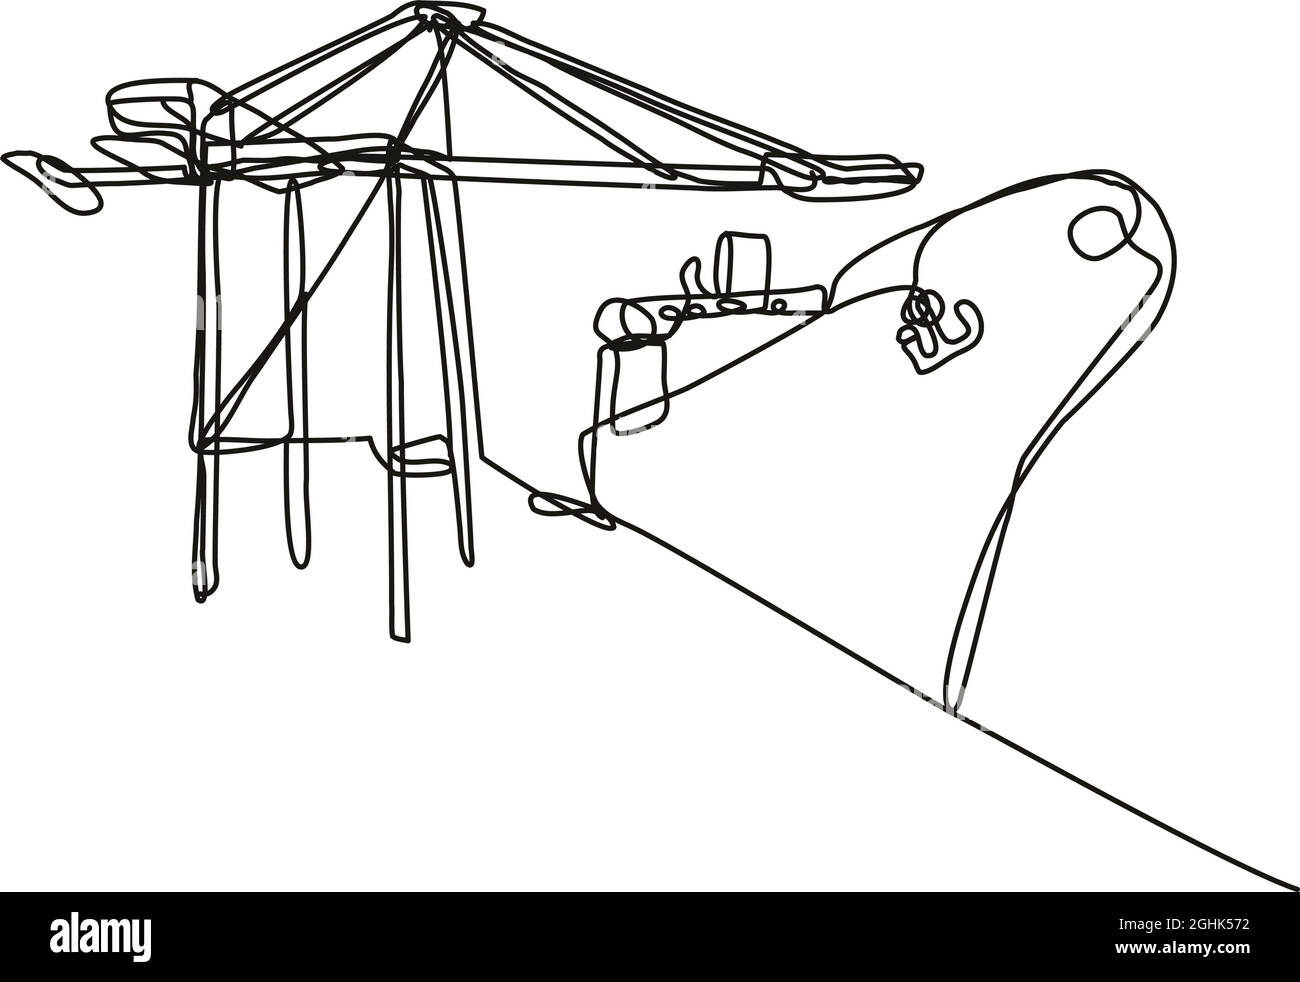 Illustrazione di un disegno in linea continua di una gru a braccio che carica una nave da carico eseguita in monocolinea o in stile doodle in bianco e nero su sfondo isolato. Illustrazione Vettoriale